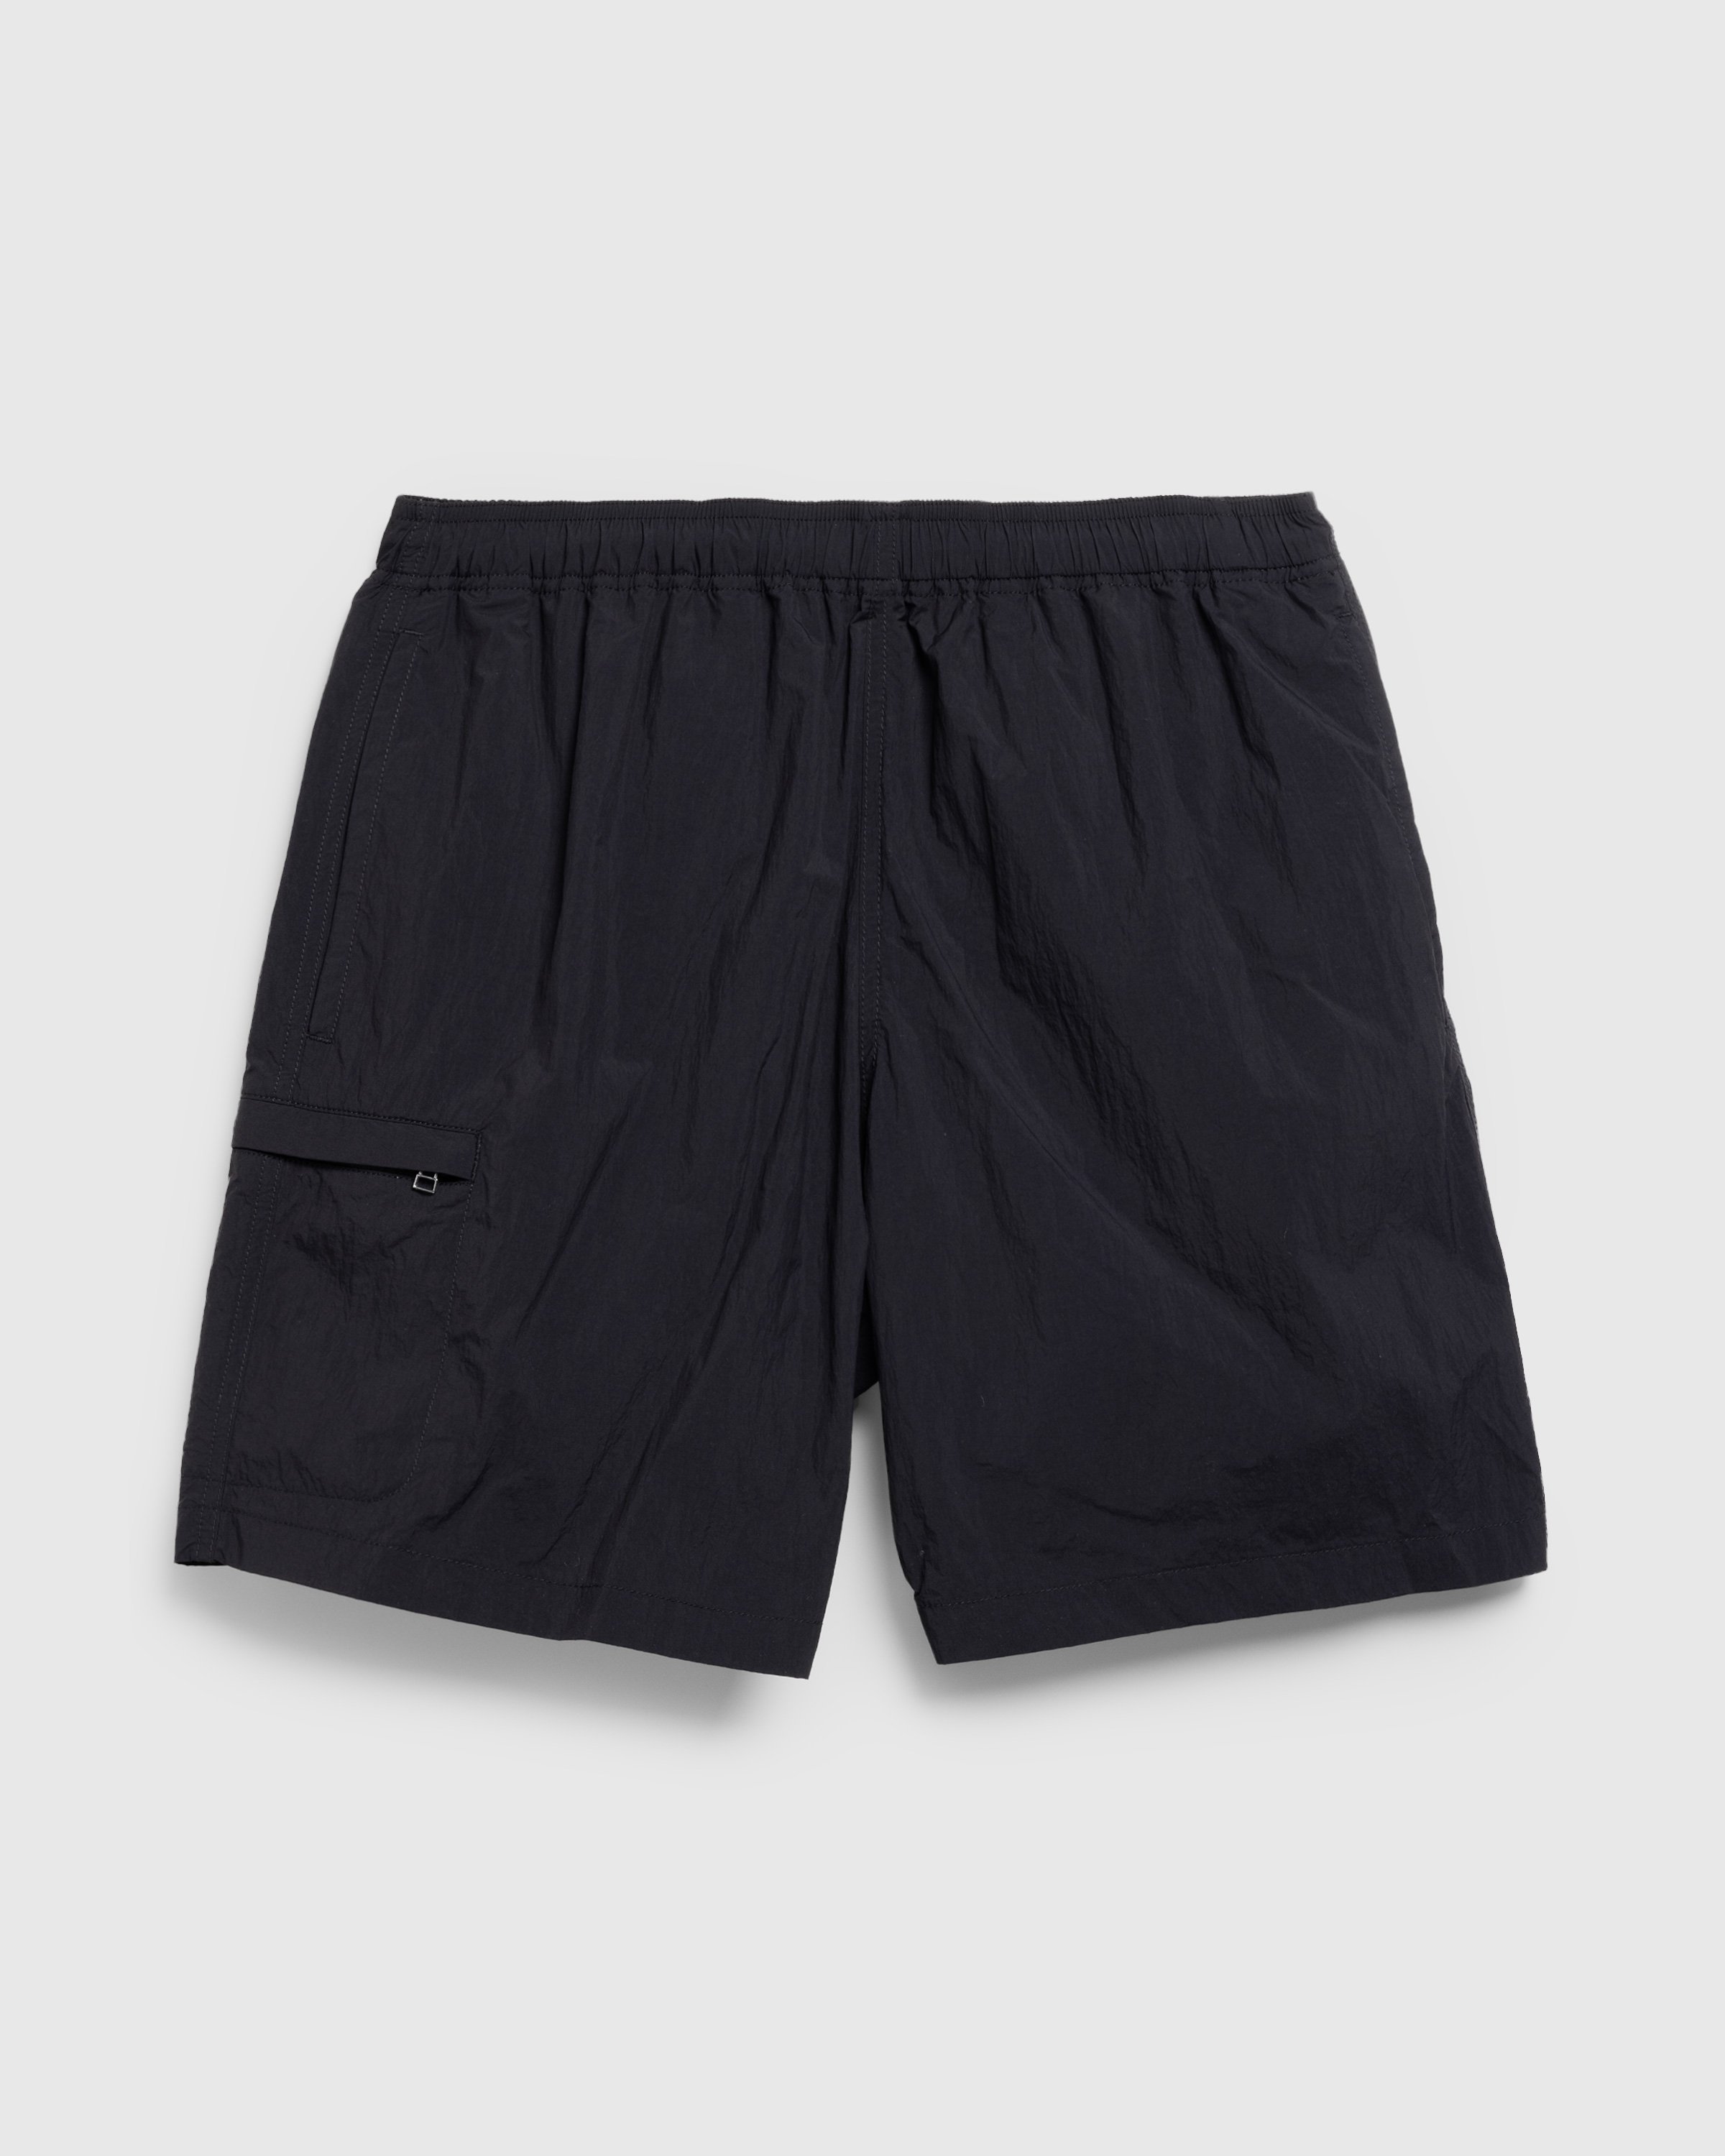 Highsnobiety HS05 - Natural Dyed Nylon Shorts Black - Clothing - Black - Image 1